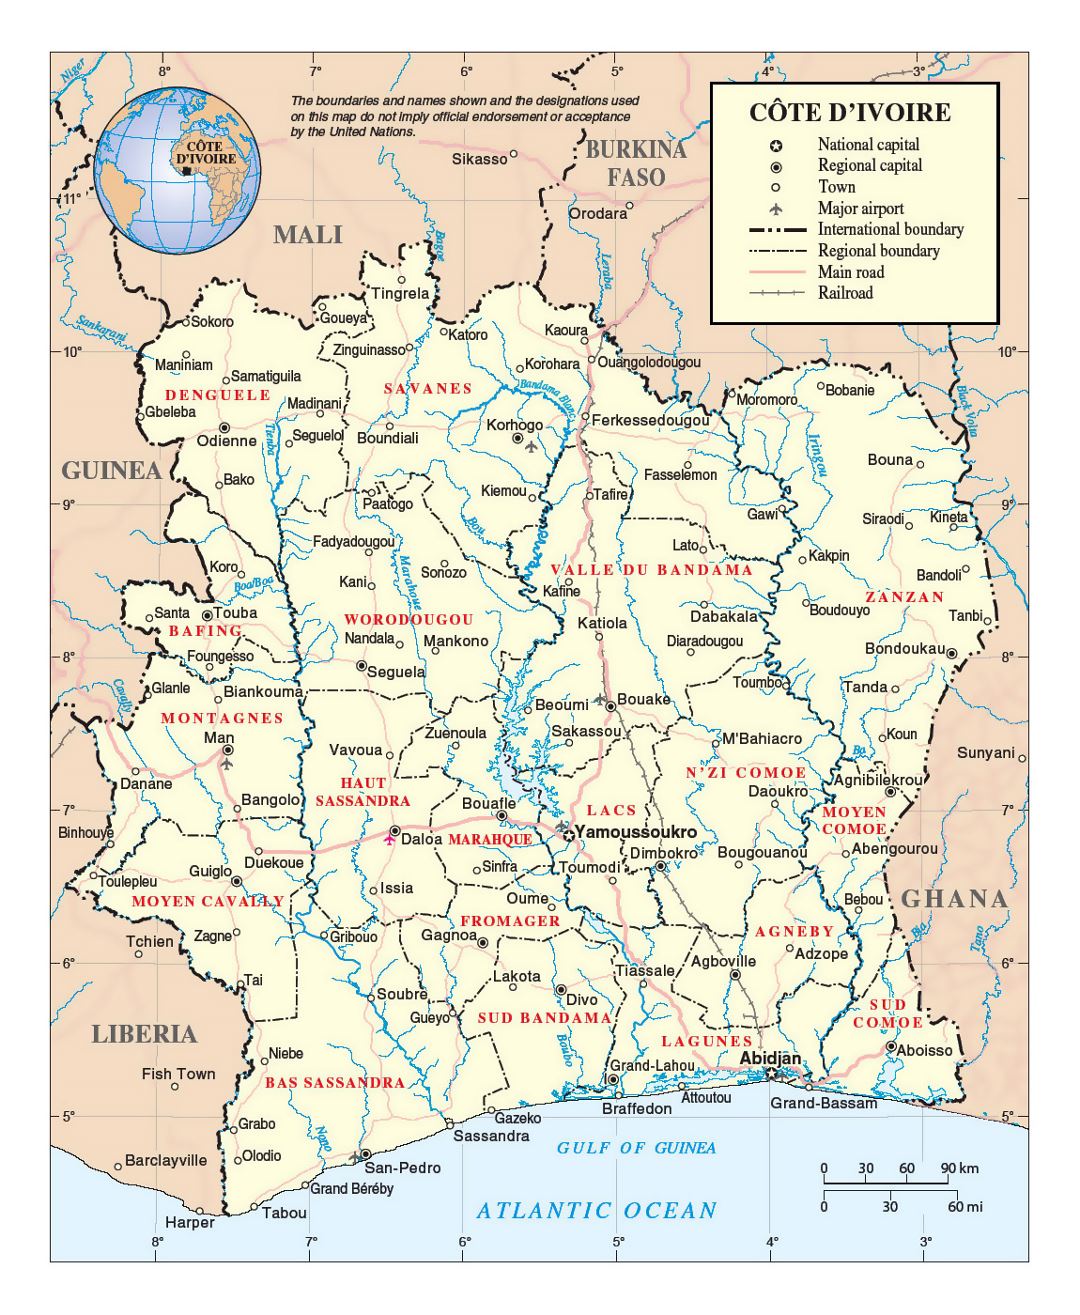 Детальная политическая и административная карта Кот-д'Ивуара с дорогами, железными дорогами, городами и аэропортами